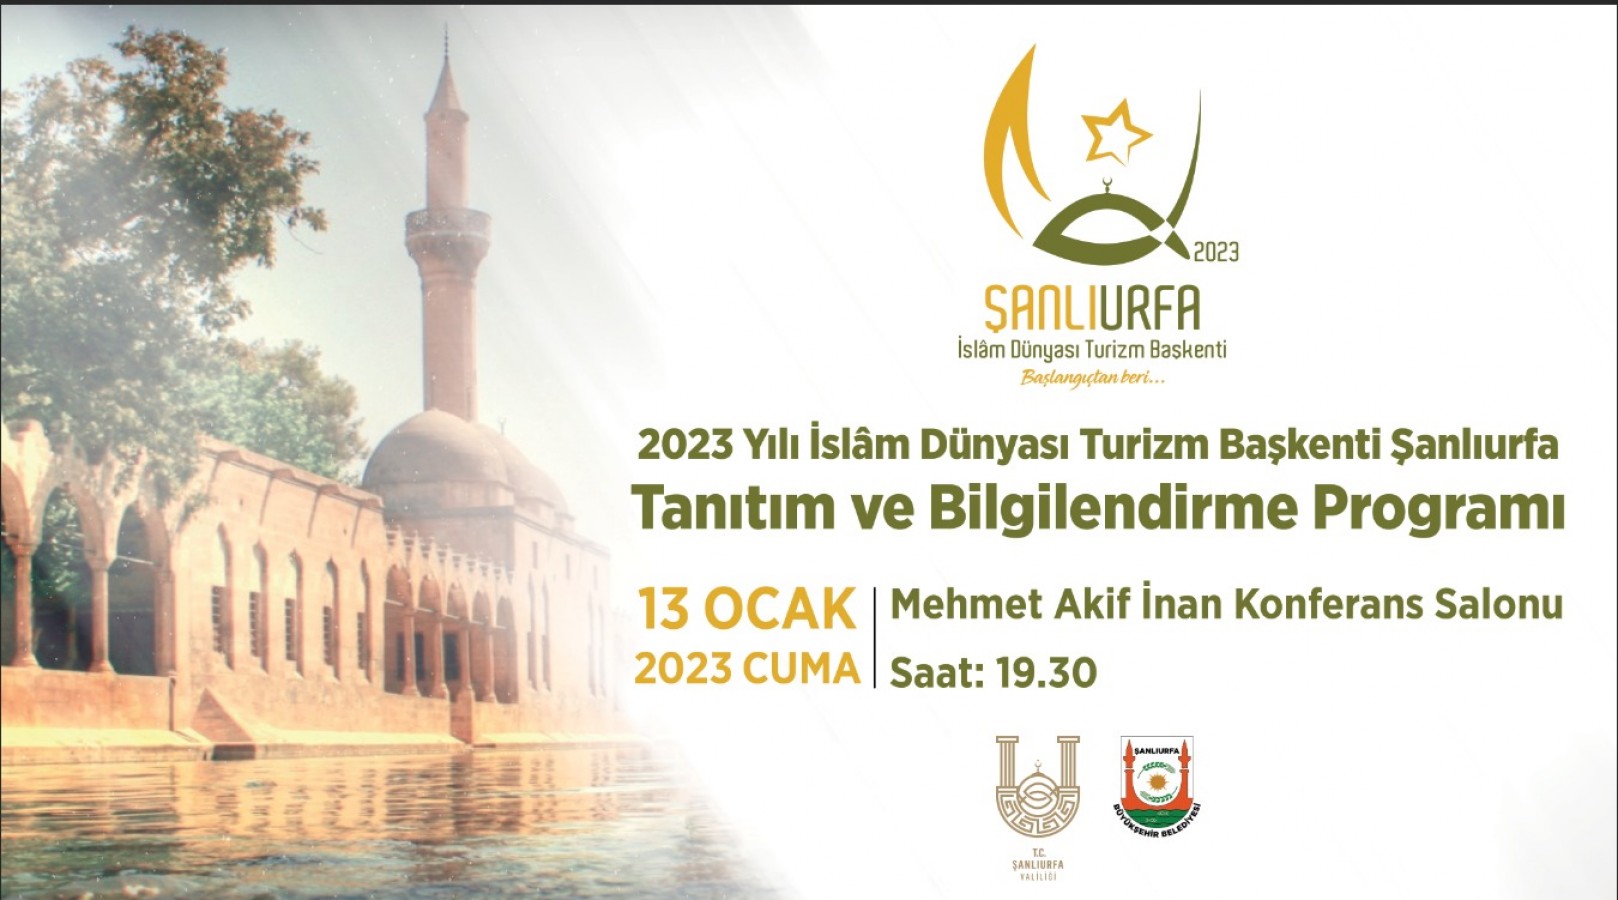 ‘2023 İslam Dünyası Turizm Başkenti’ tanıtım toplantısı yapılacak;